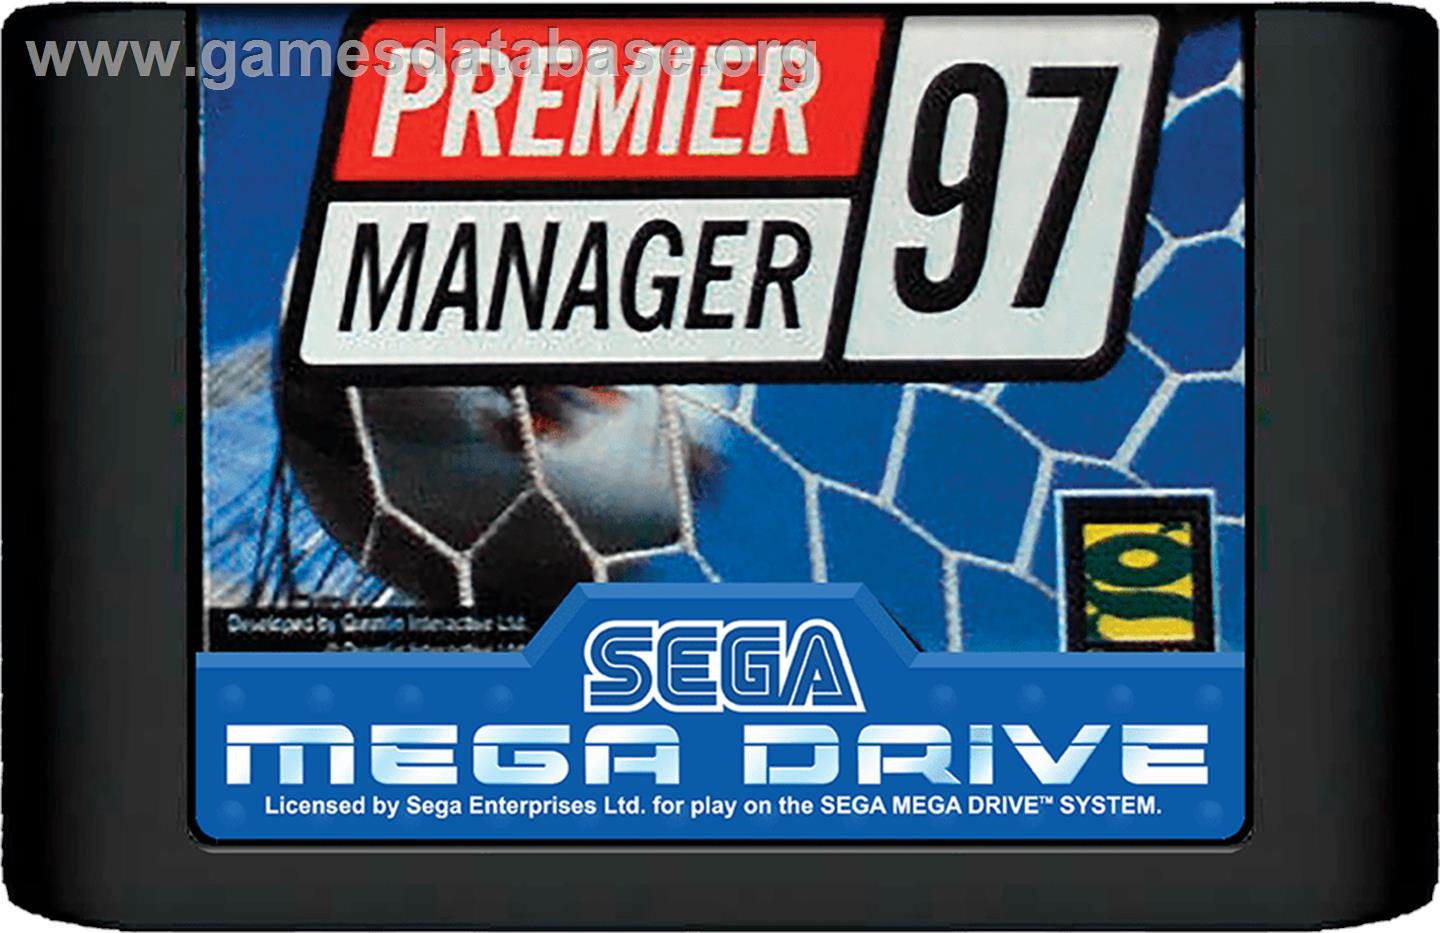 Premier Manager 97 - Sega Genesis - Artwork - Cartridge